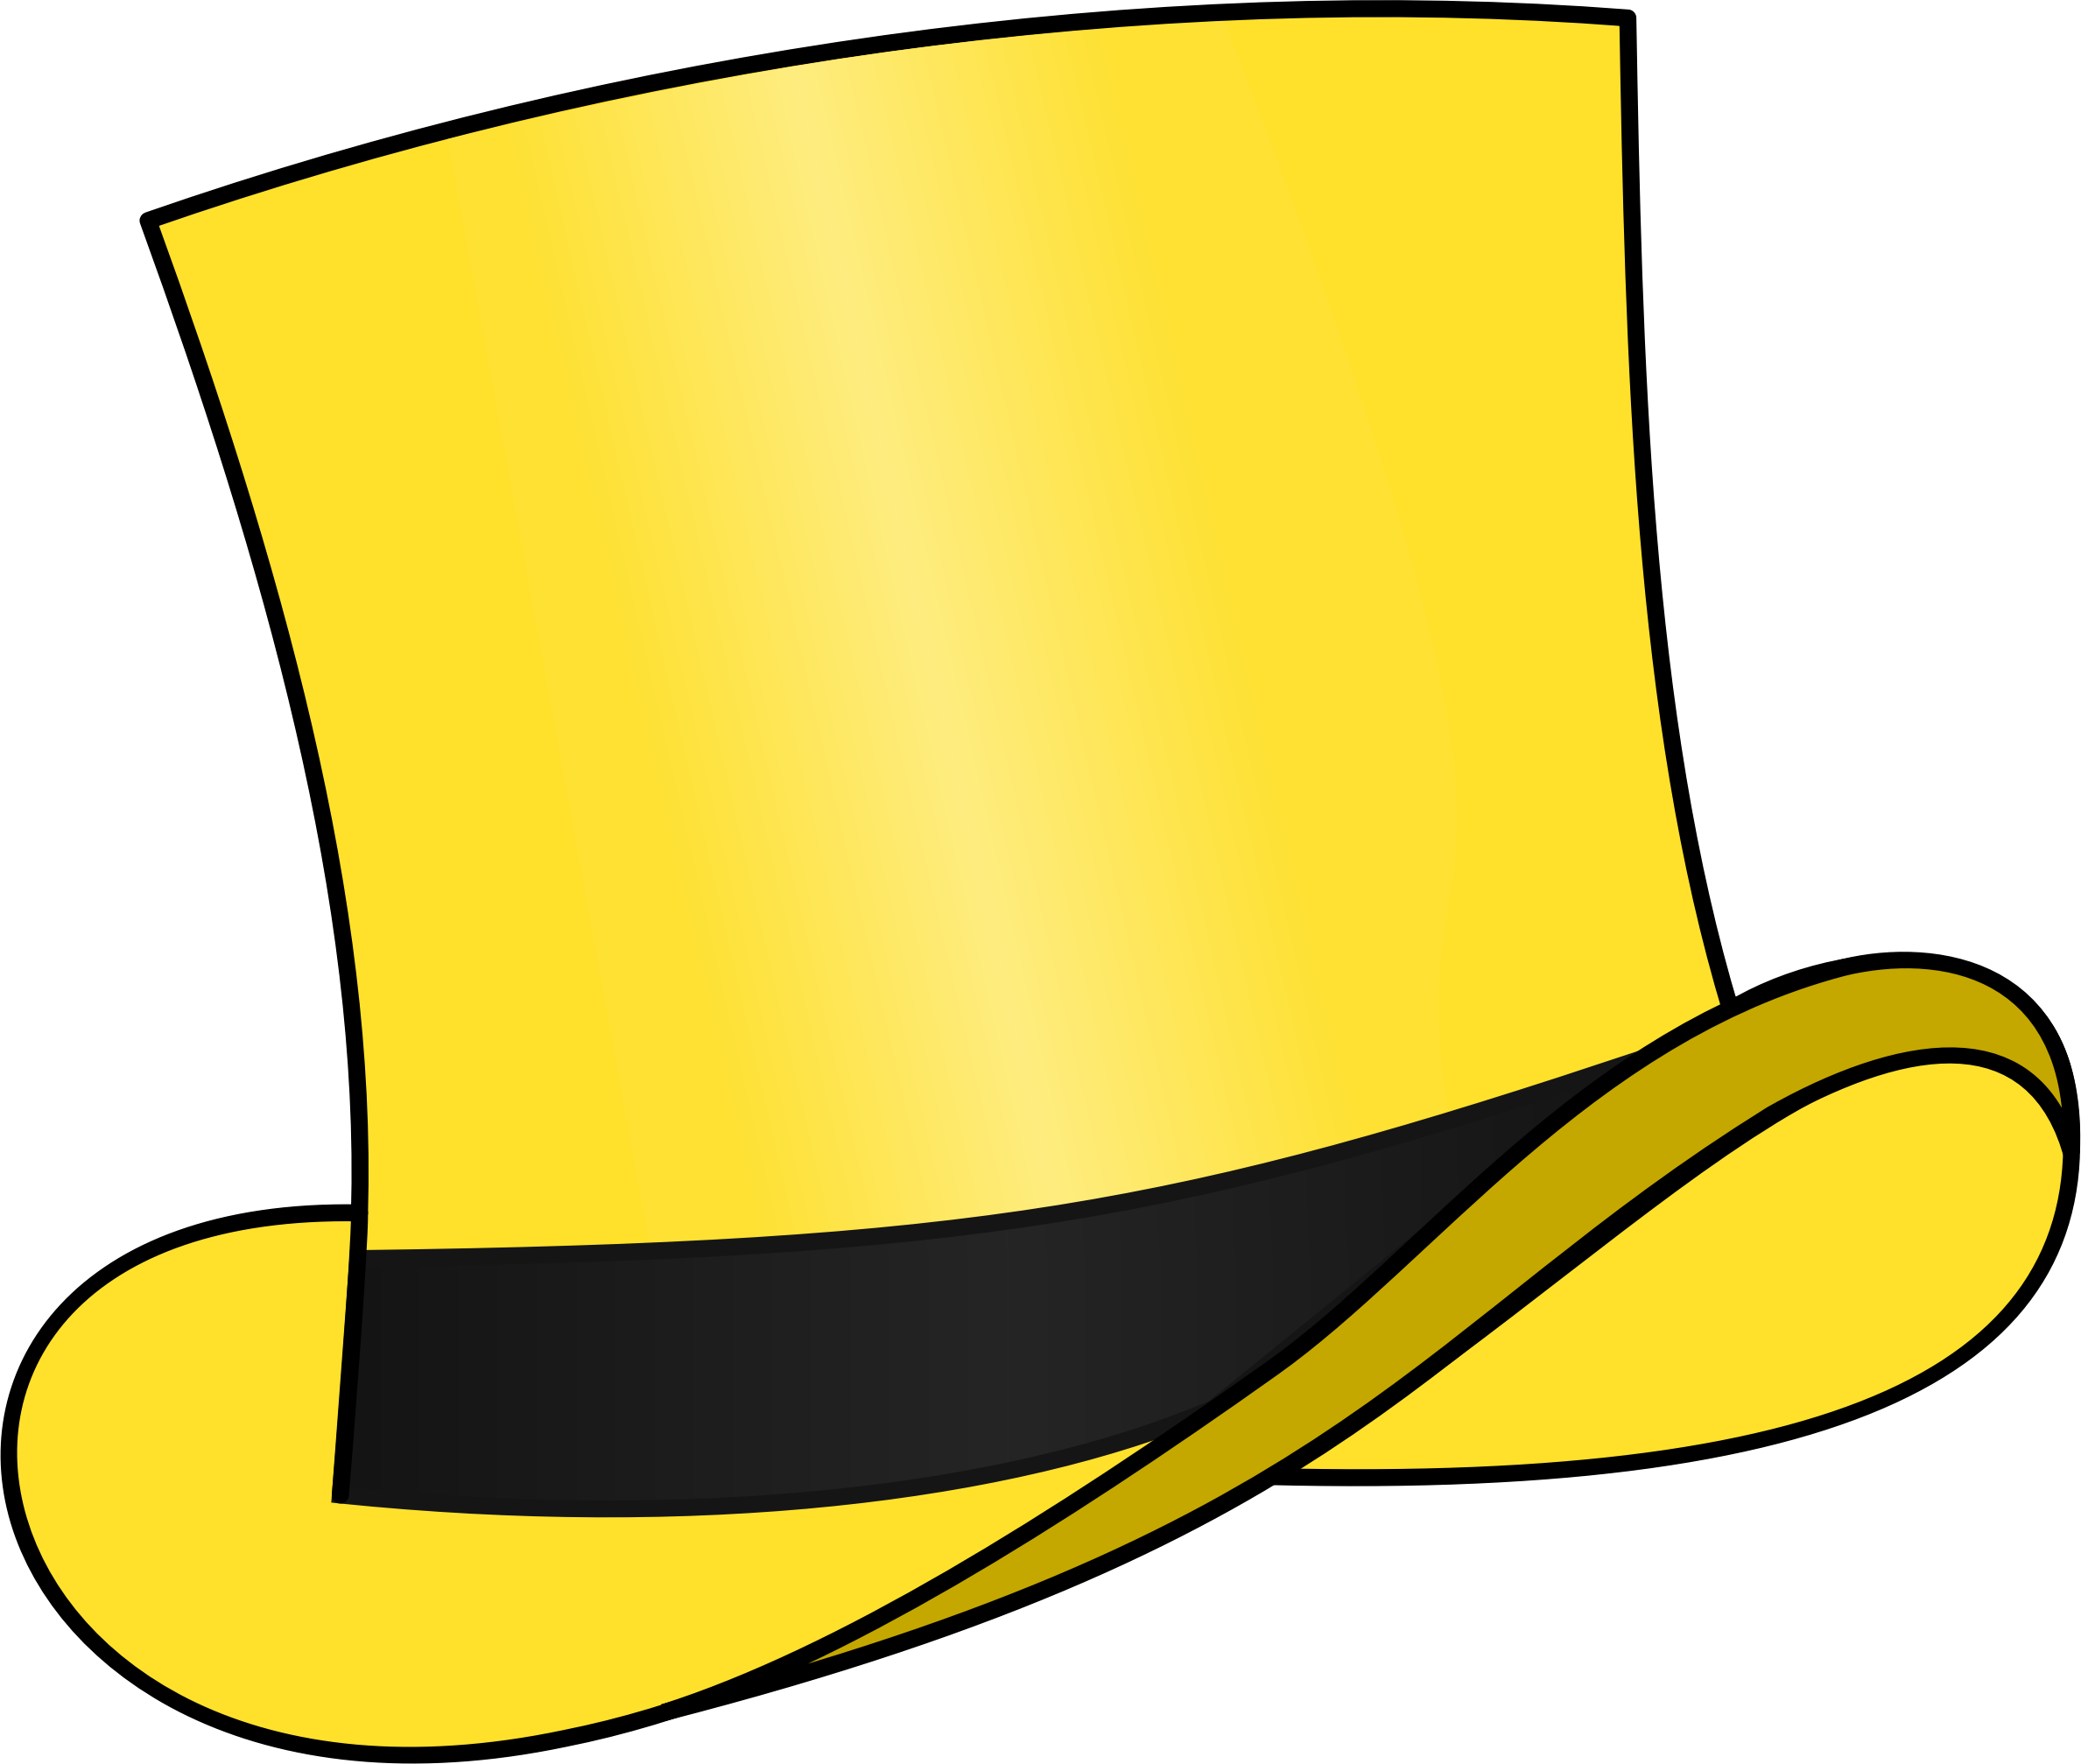 Hat keinen. Желтая шляпа. Цветные шляпы. Желтая шляпа цилиндр. Шляпка мультяшная.